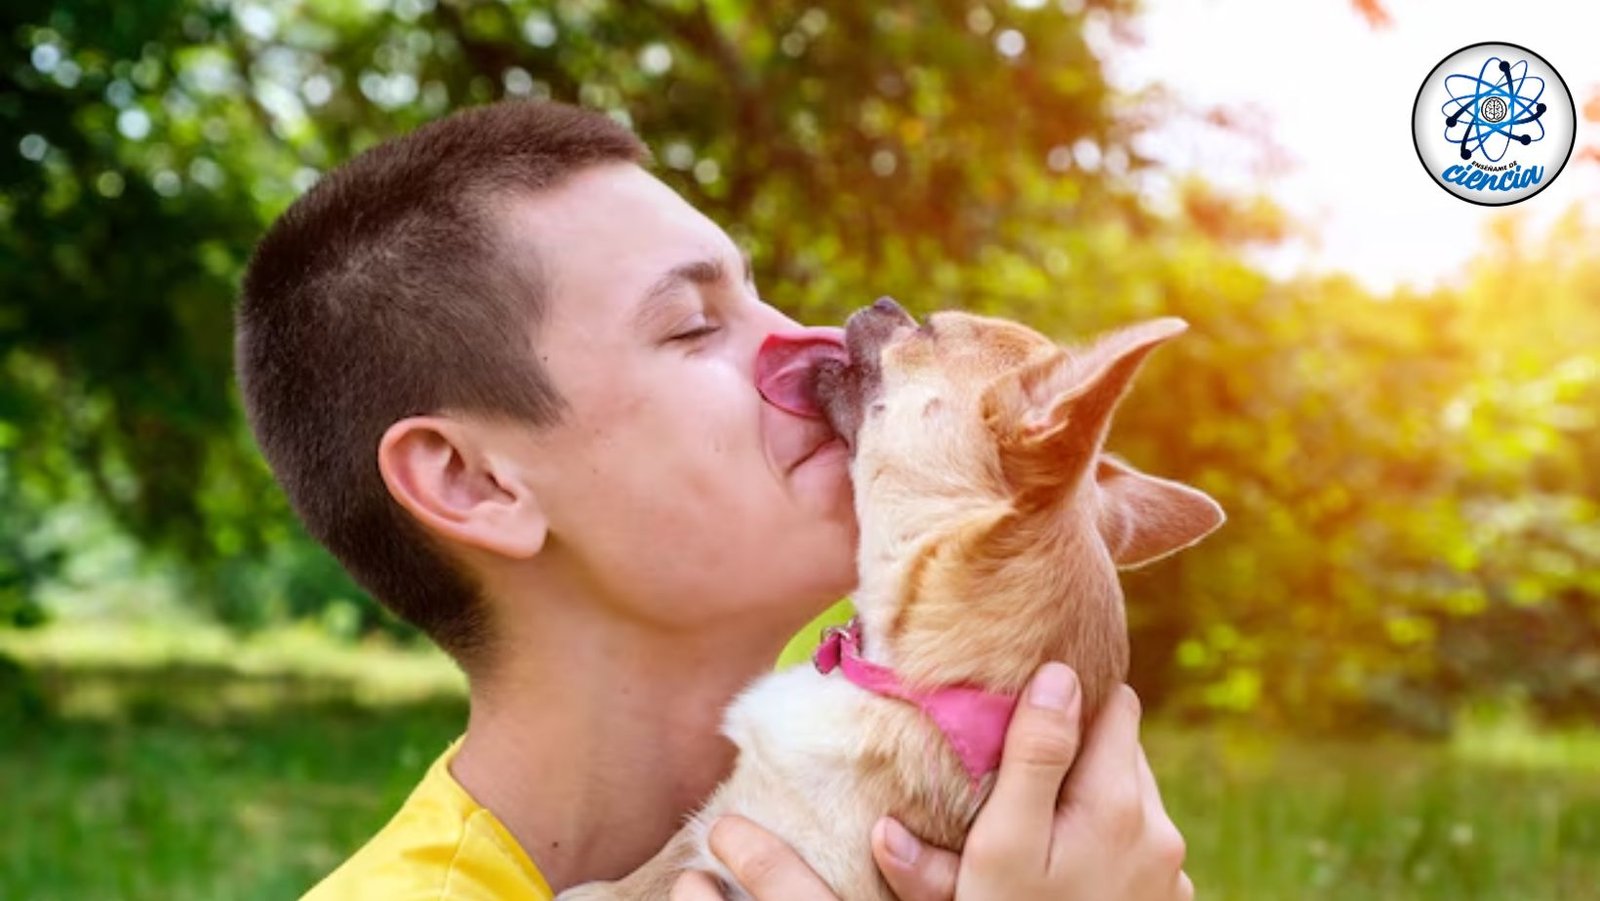 Enfermedades contagiosas que puedes contraer de la saliva de tu perro